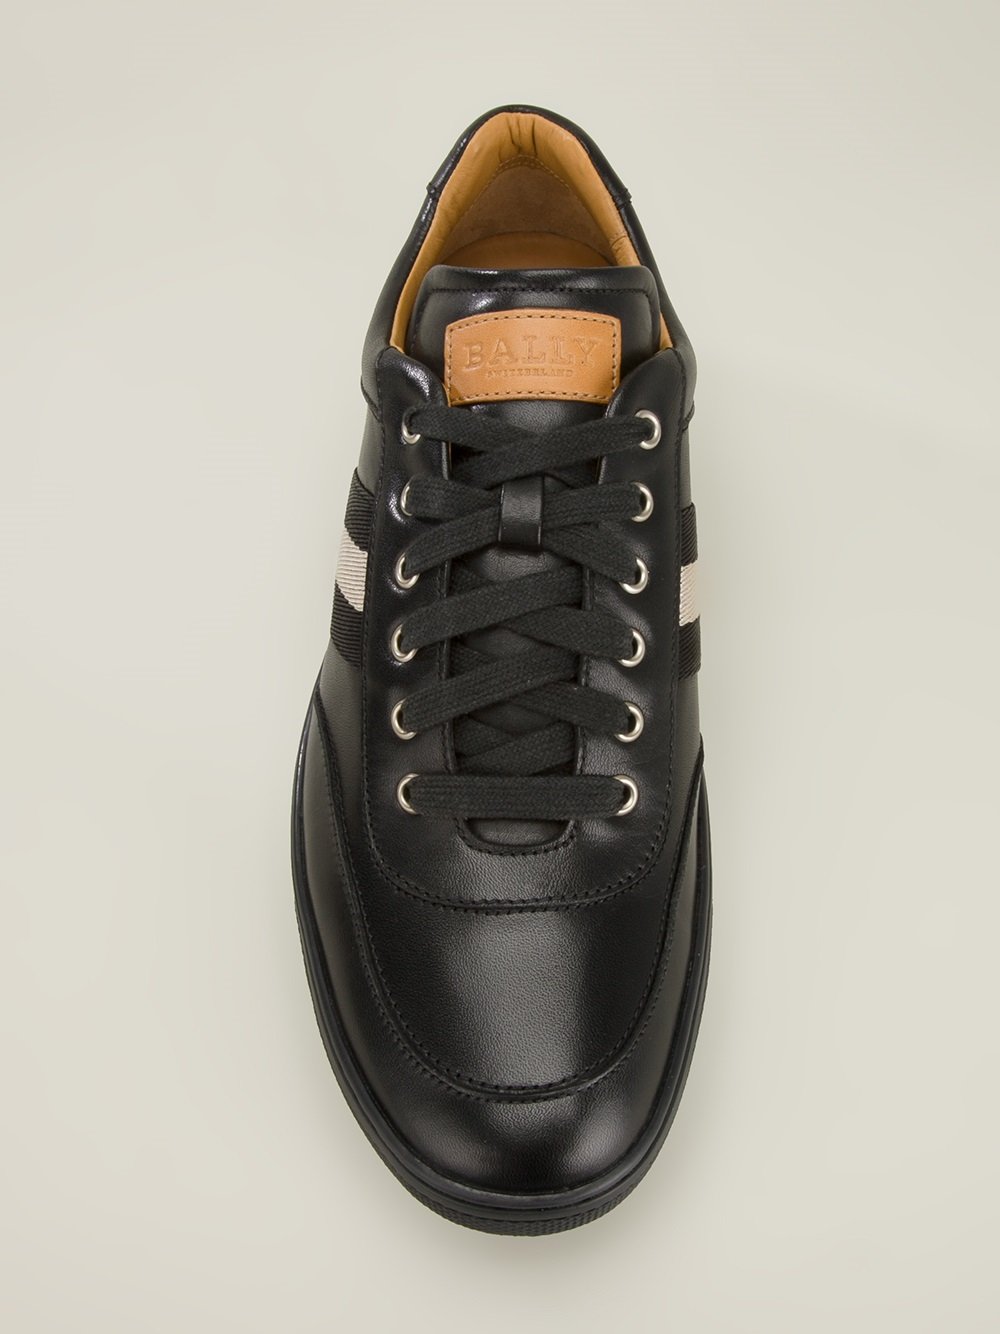 Bally 'Oriano' Sneaker in Black for Men - Lyst